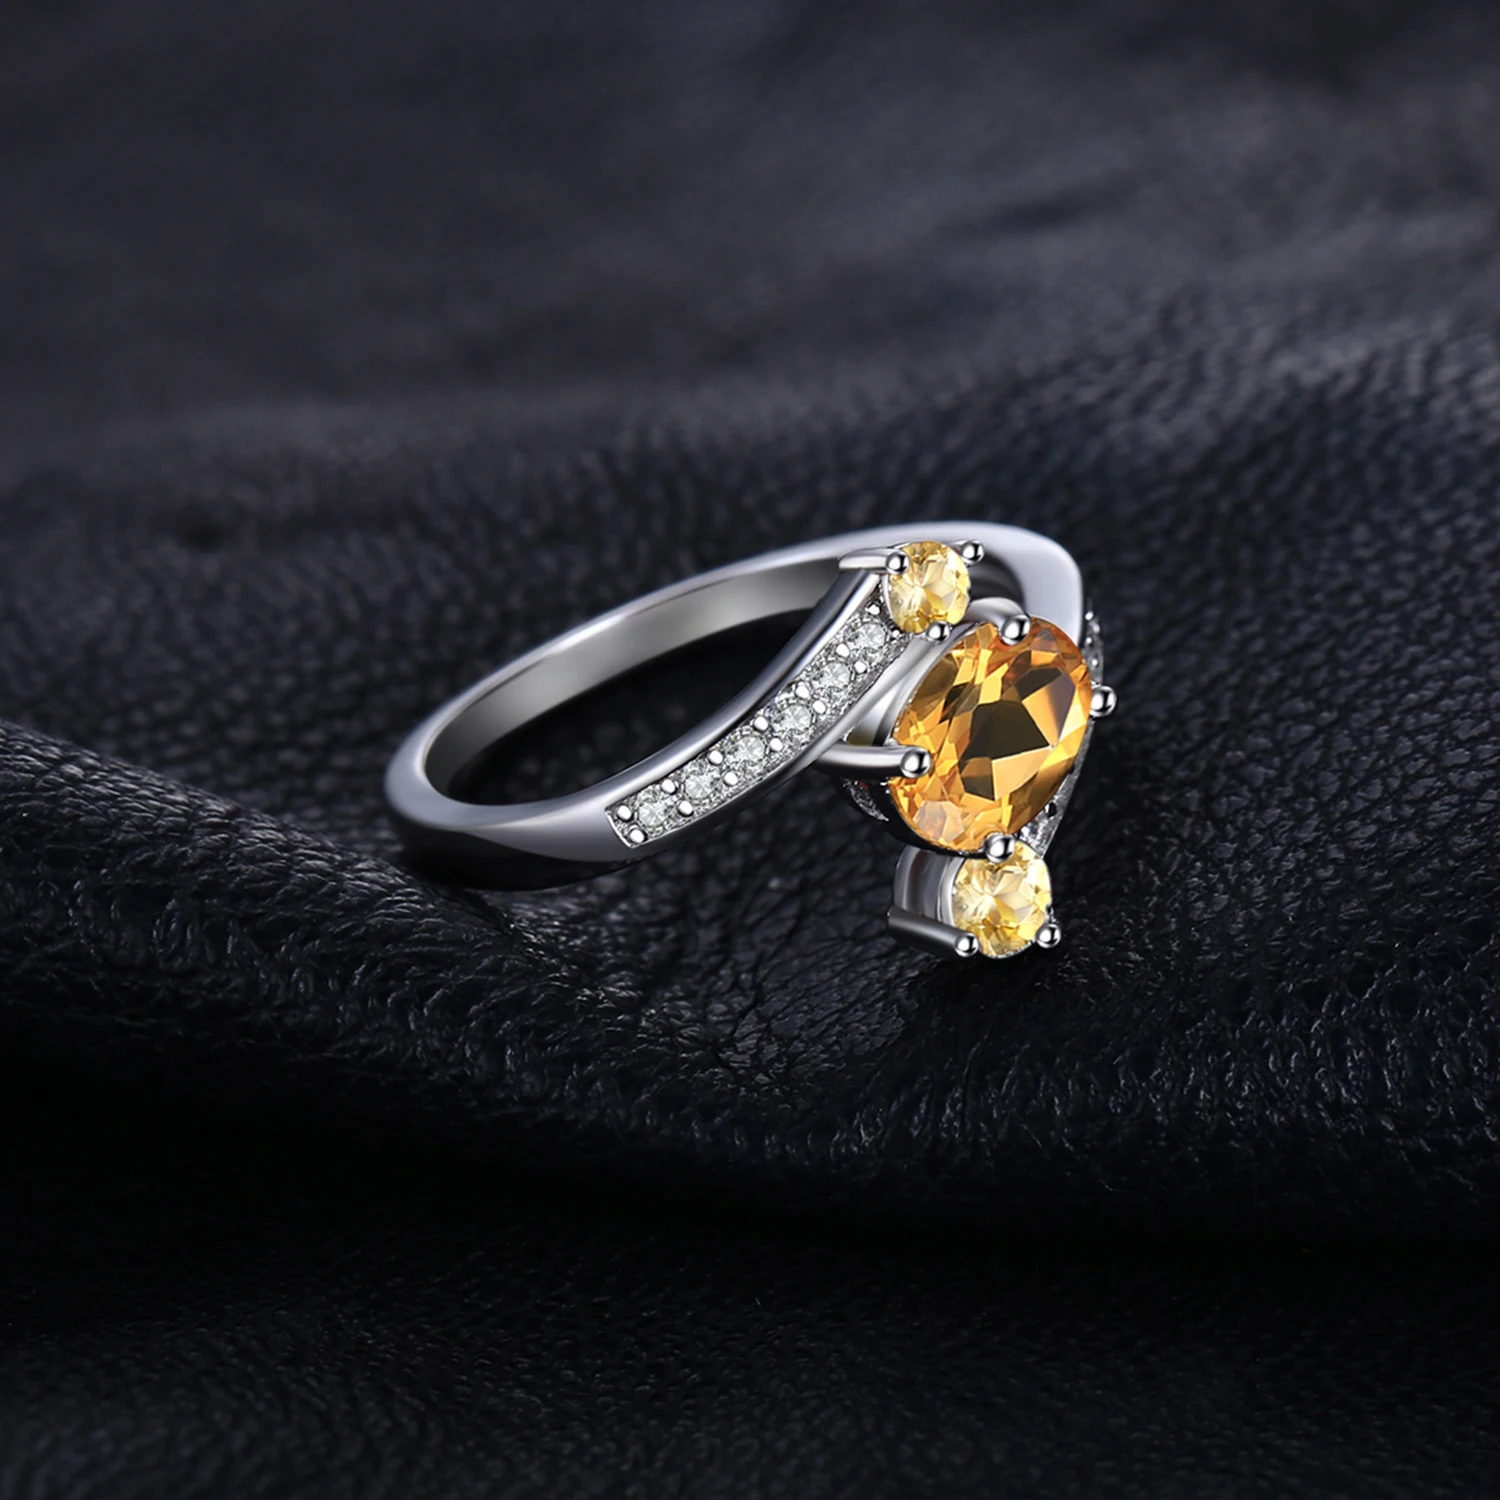 Jewelrypalace стерлингового серебра 925 0.9ct натуральный цитрин 3 камня Юбилей кольцо изящных ювелирных изделий для Для женщин заявление кольцо бренд